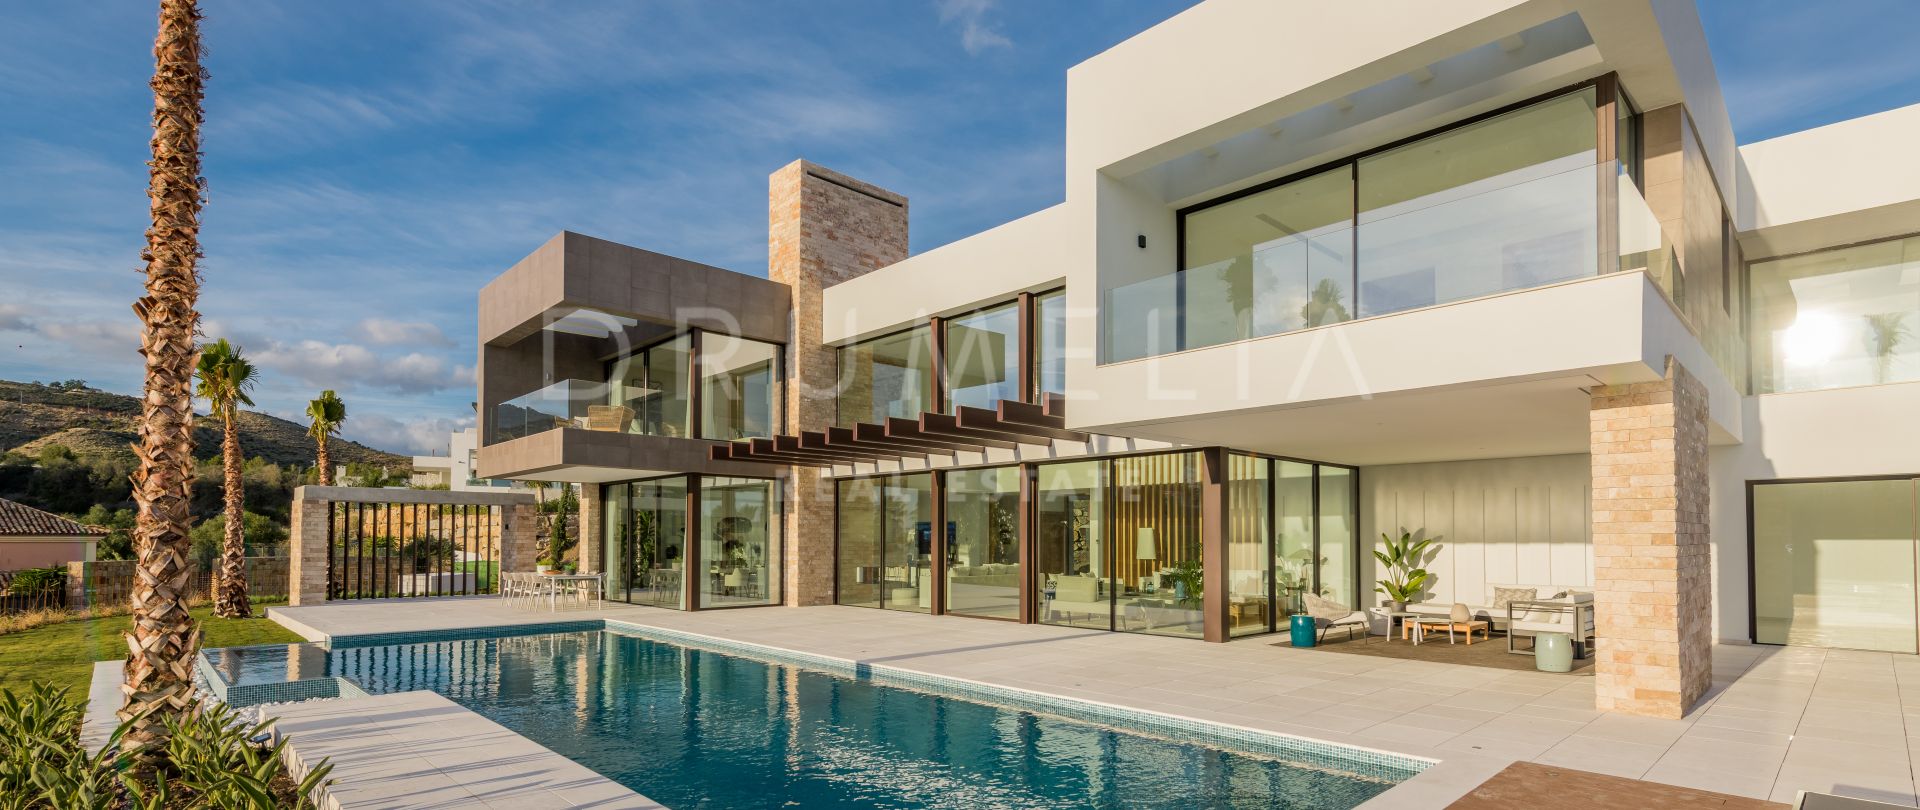 Gloednieuwe prachtige, chique, eigentijdse stijl luxe villa in La Alqueria